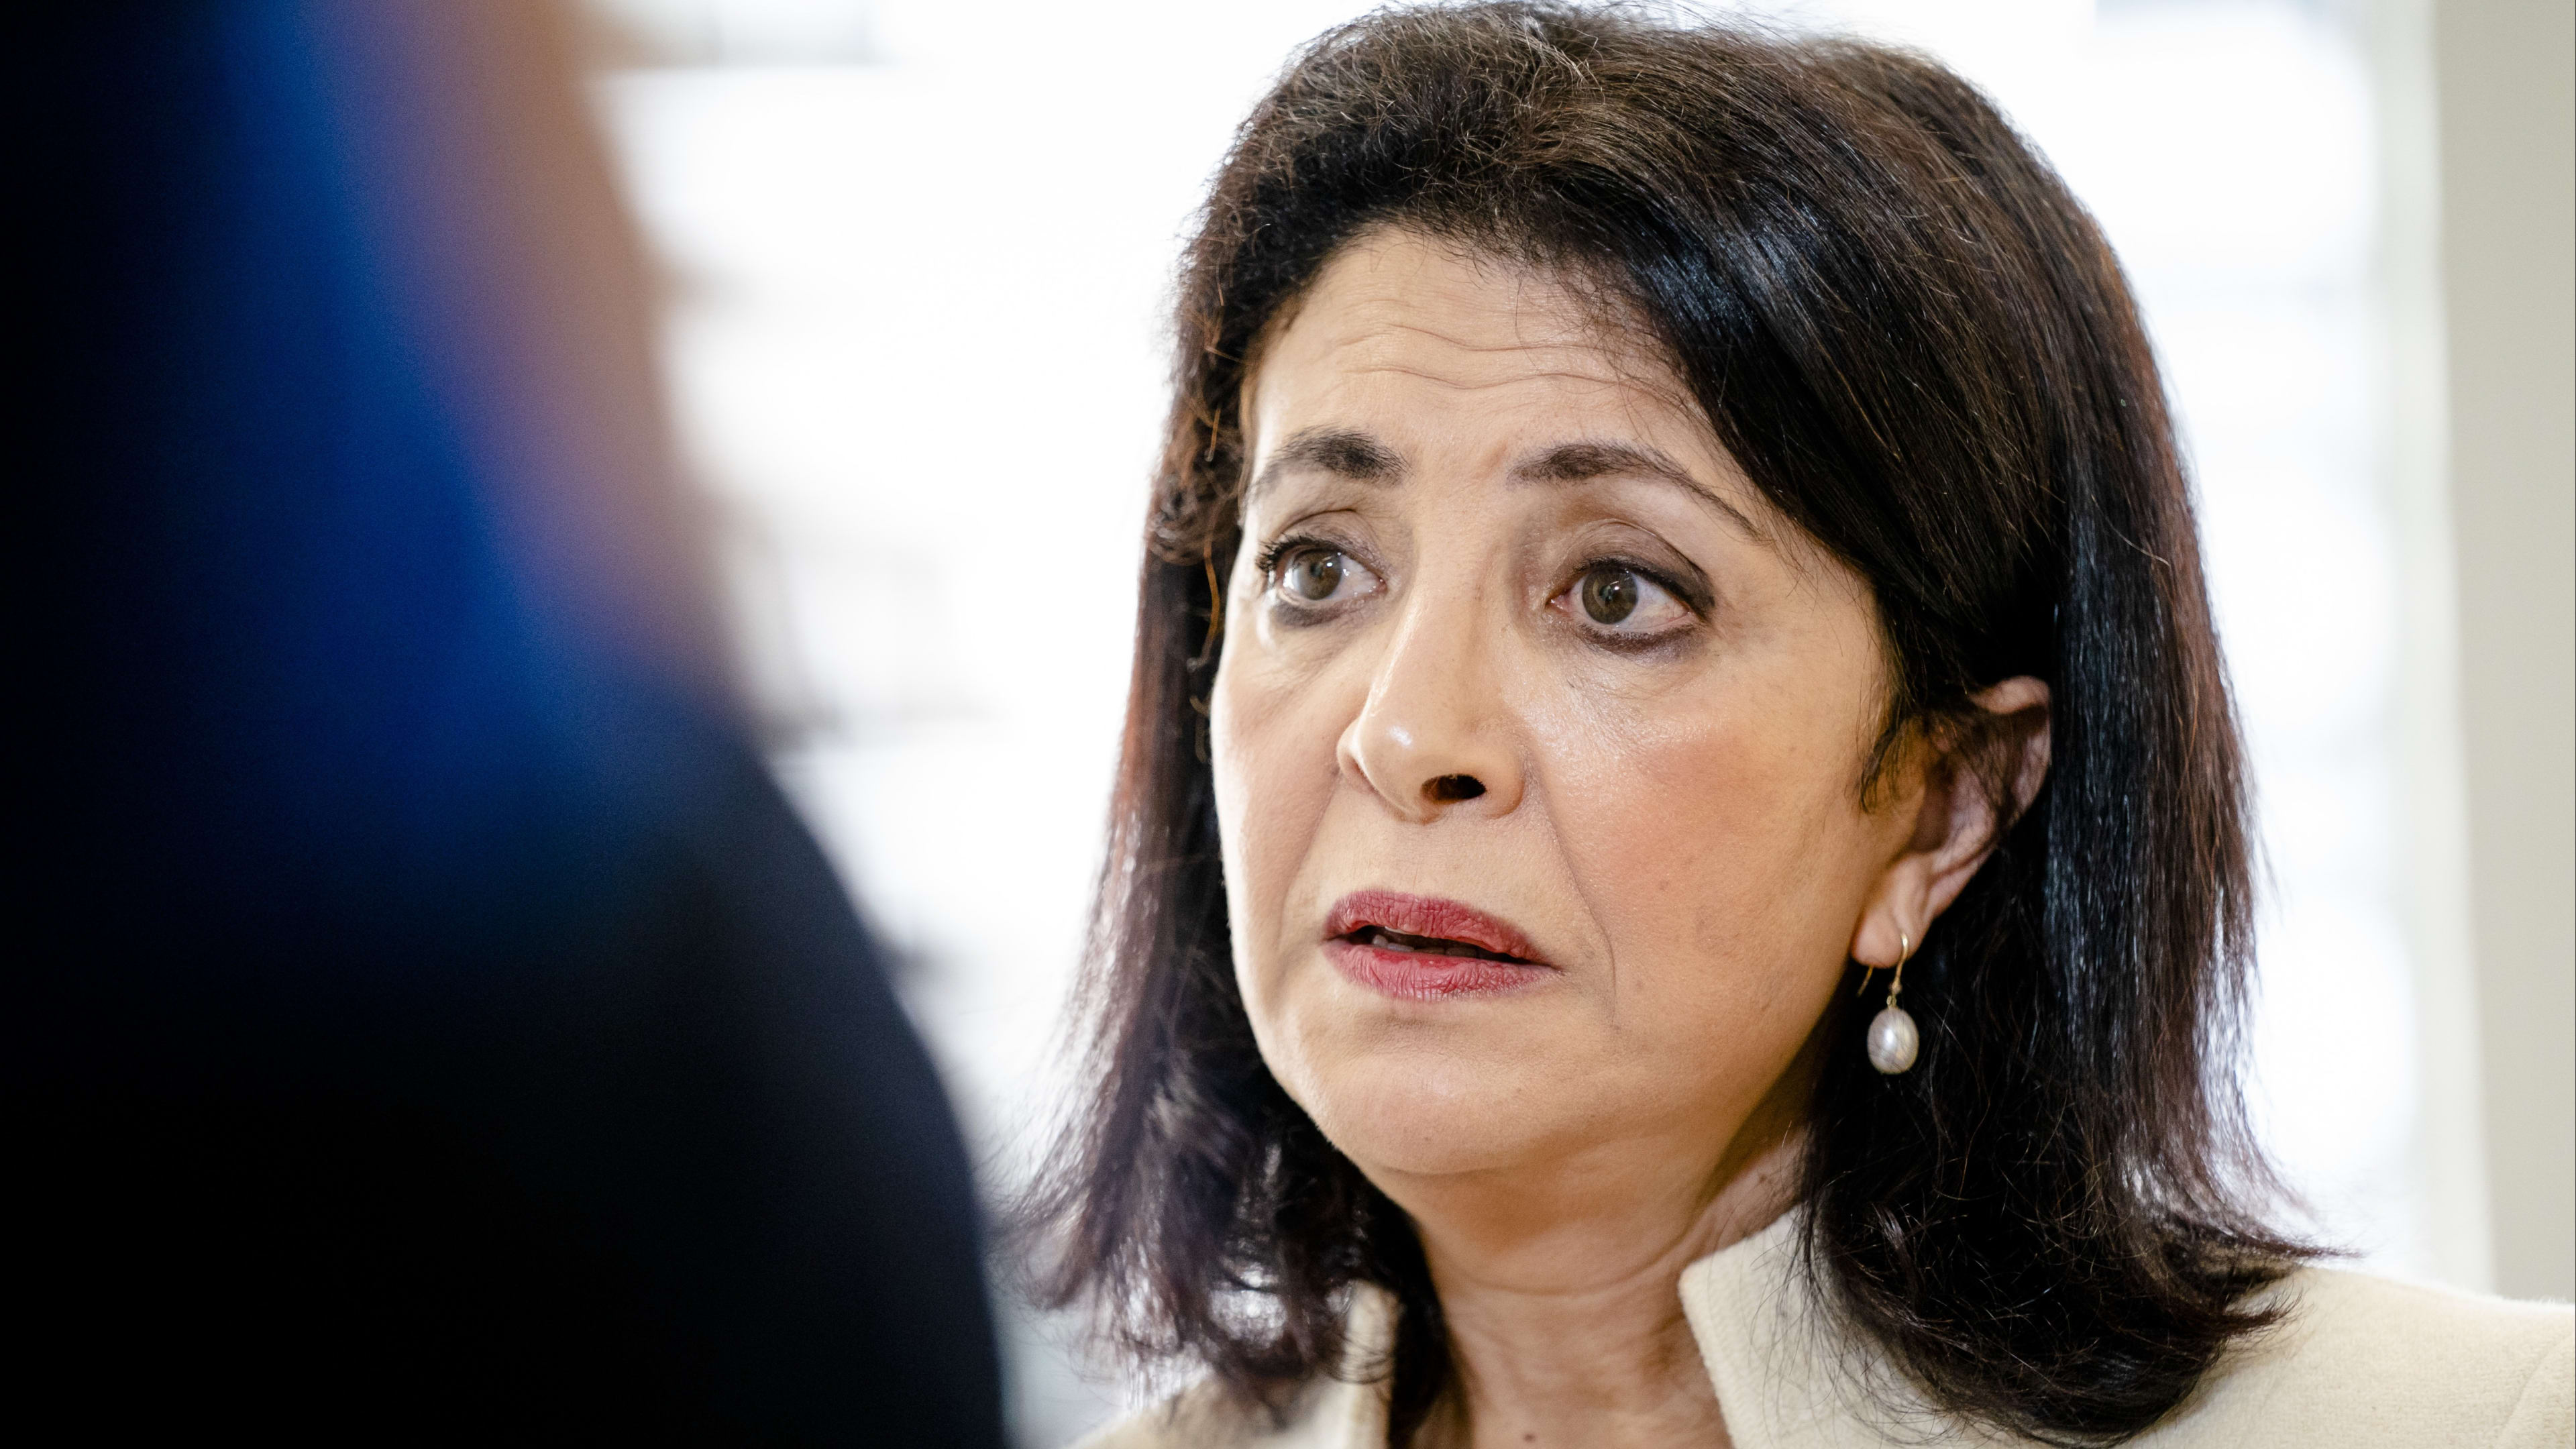 Oud-Kamervoorzitter Khadija Arib valt Vera Bergkamp hard aan: 'Ze heeft geen enkele bevoegdheid'